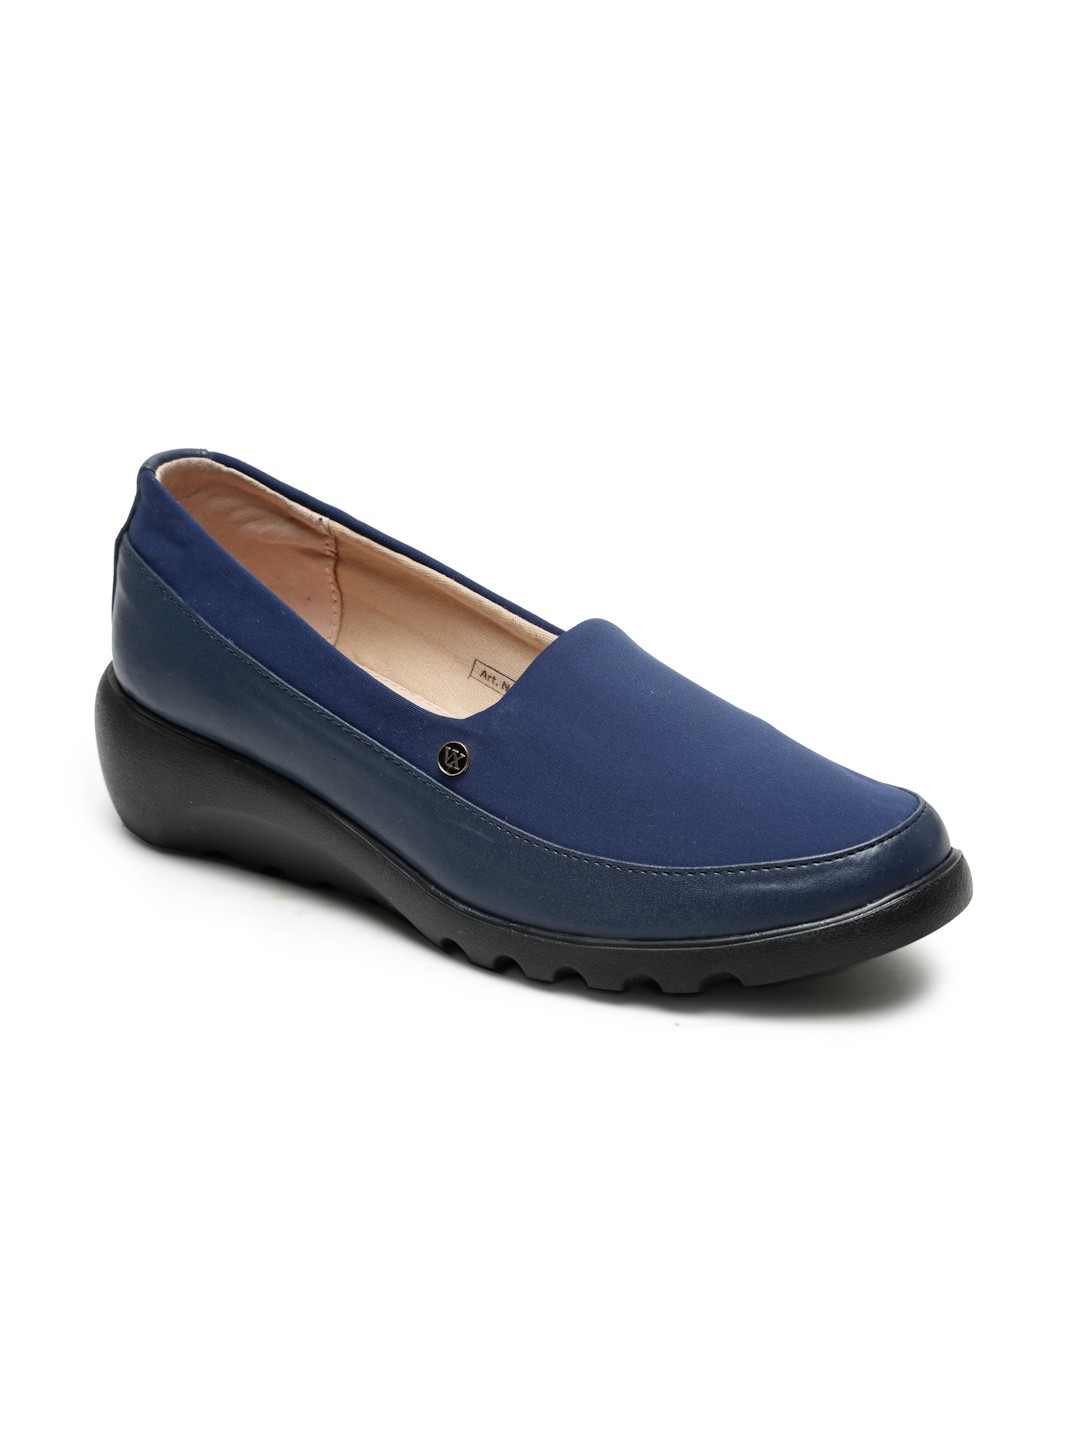 Buy Von Wellx Germany Comfort Women's Blue Casual Shoes Elsa Online in Varanasi